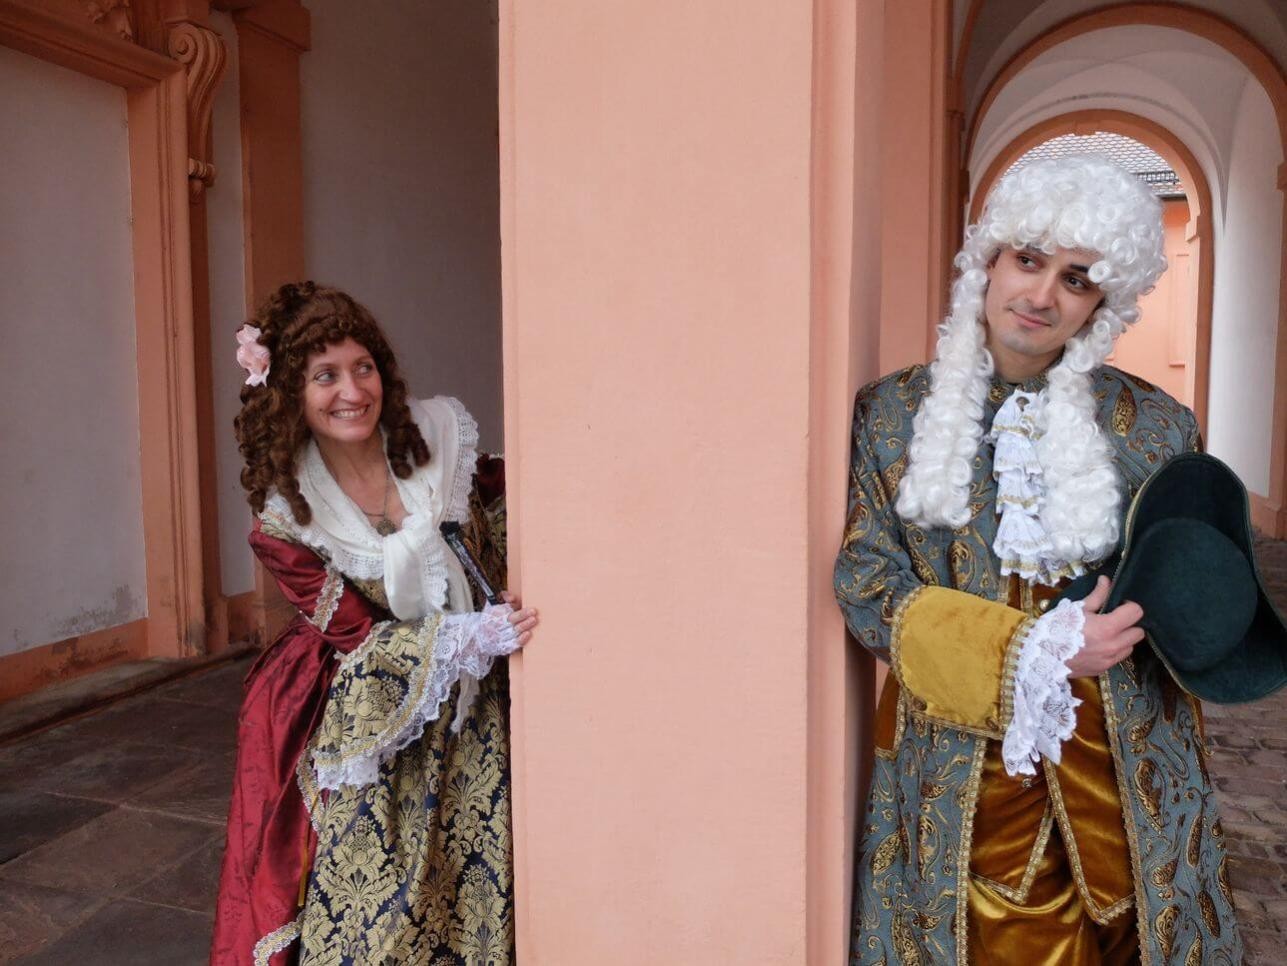 Frau und Mann in barocken Kostümen